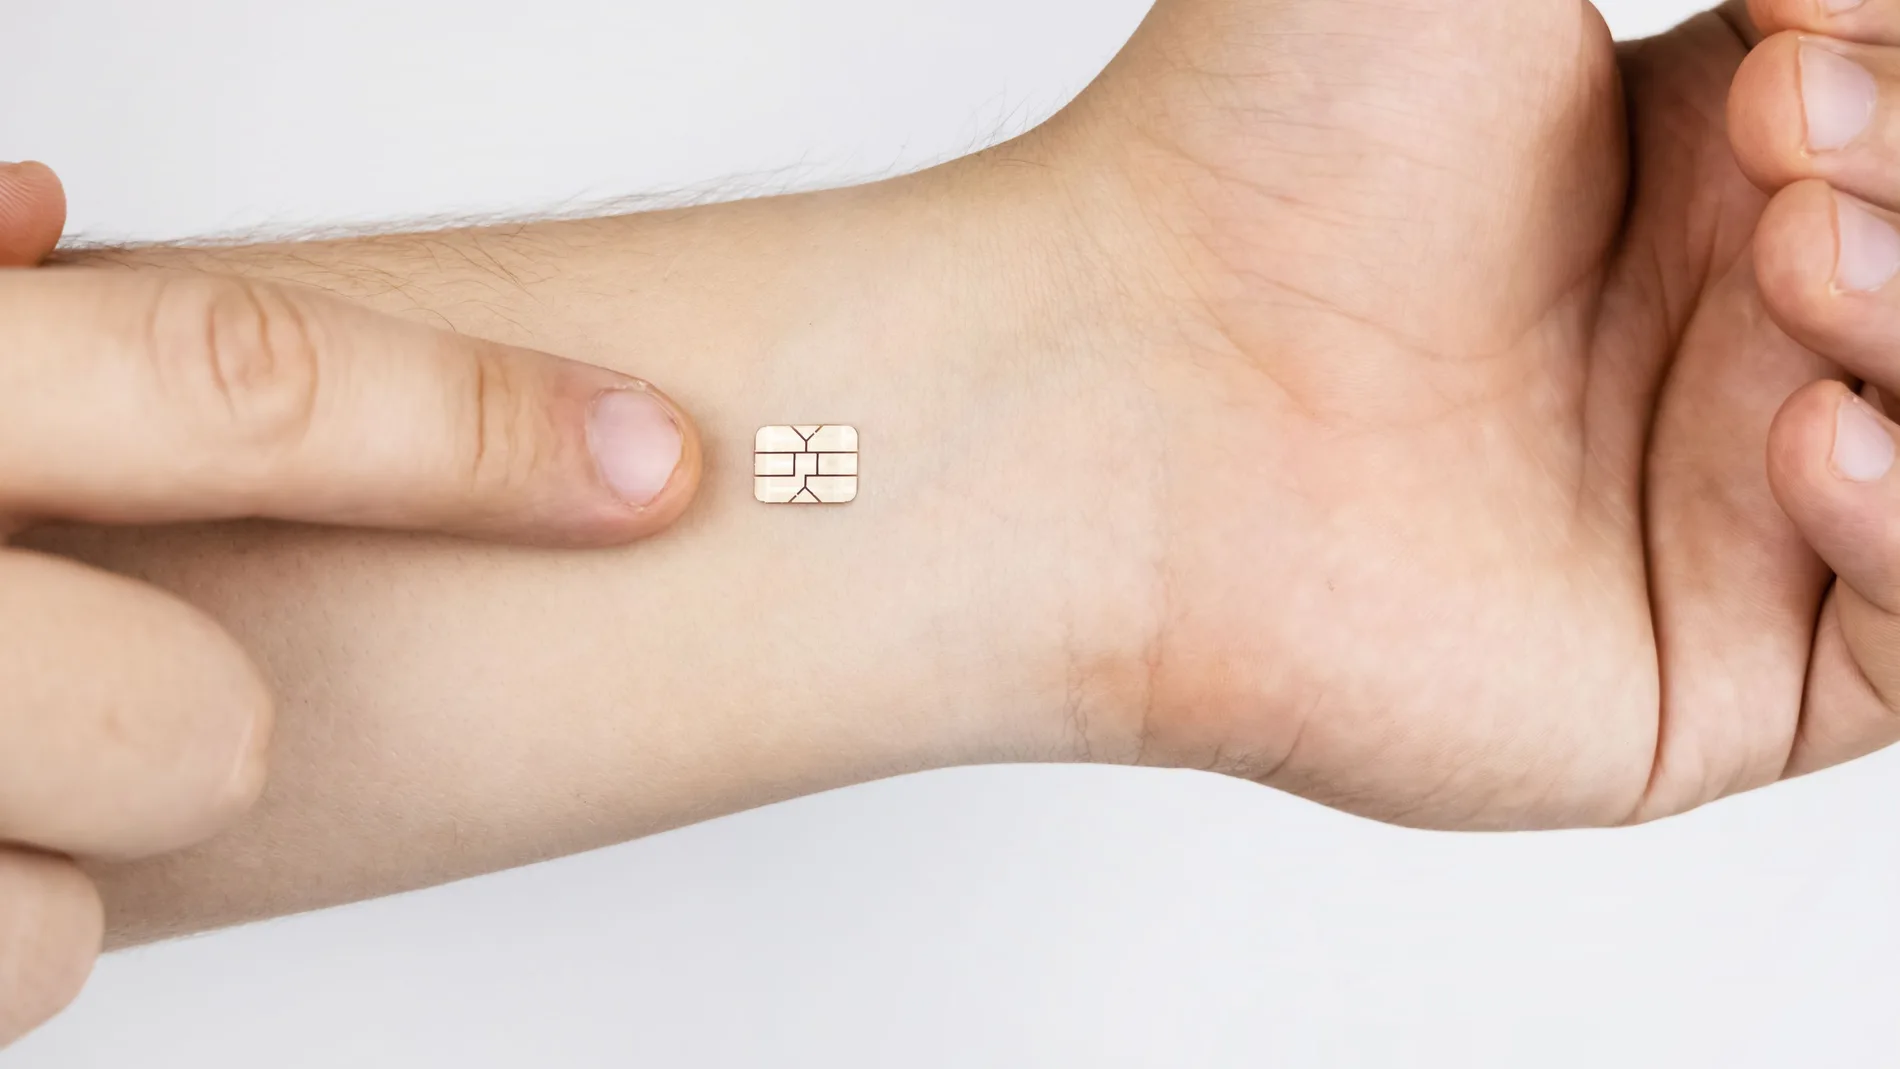 Los biohackers quieren llevar sus llaves de casa y tarjetas de crédito incorporadas en la piel